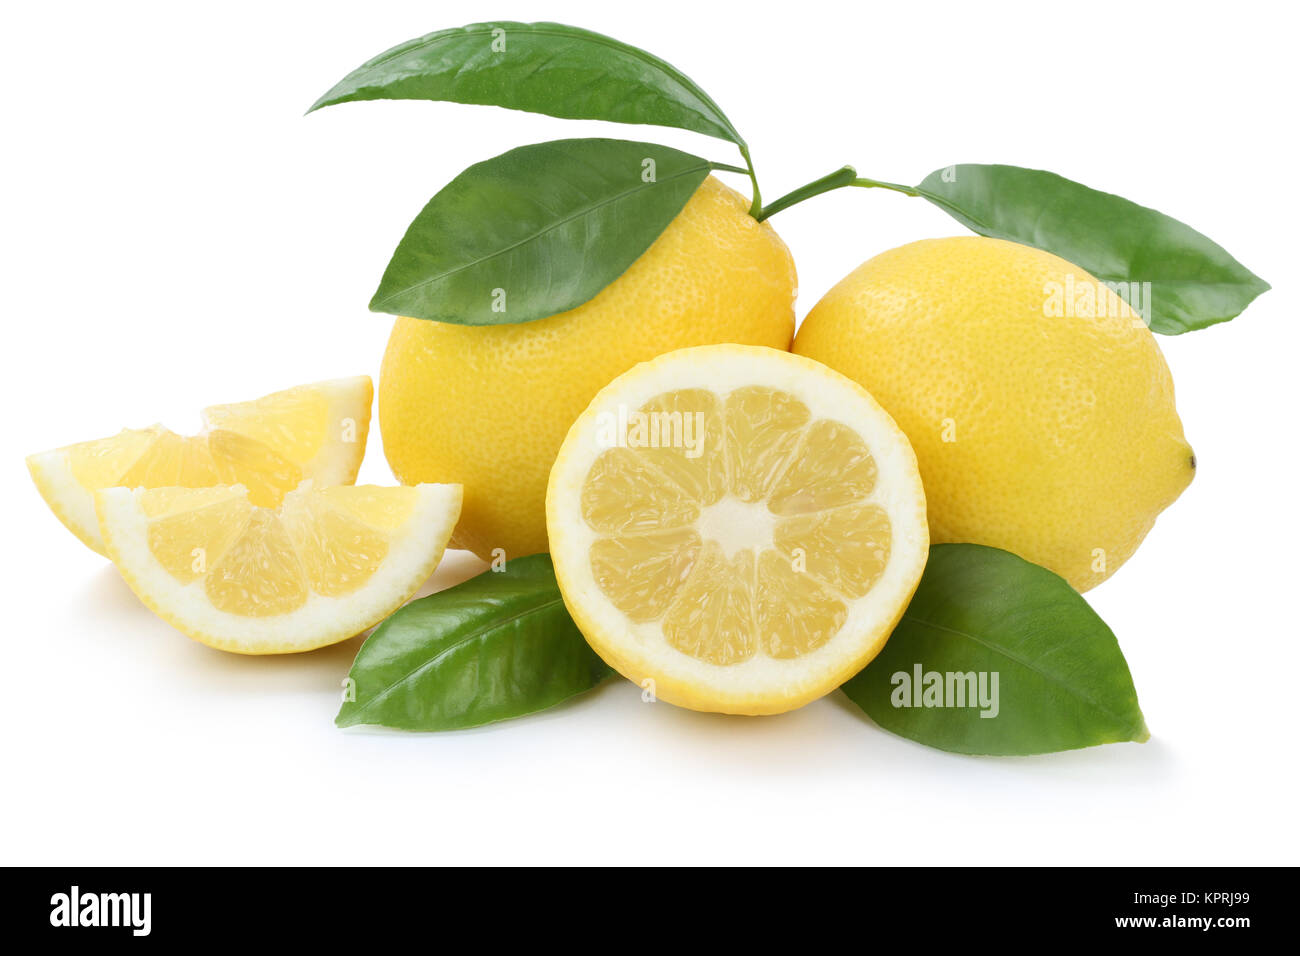 Zitrone Zitronen bio geschnitten Photo freigestellt Früchte Hintergrund Stock vor einem Freisteller isoliert Alamy weissen 